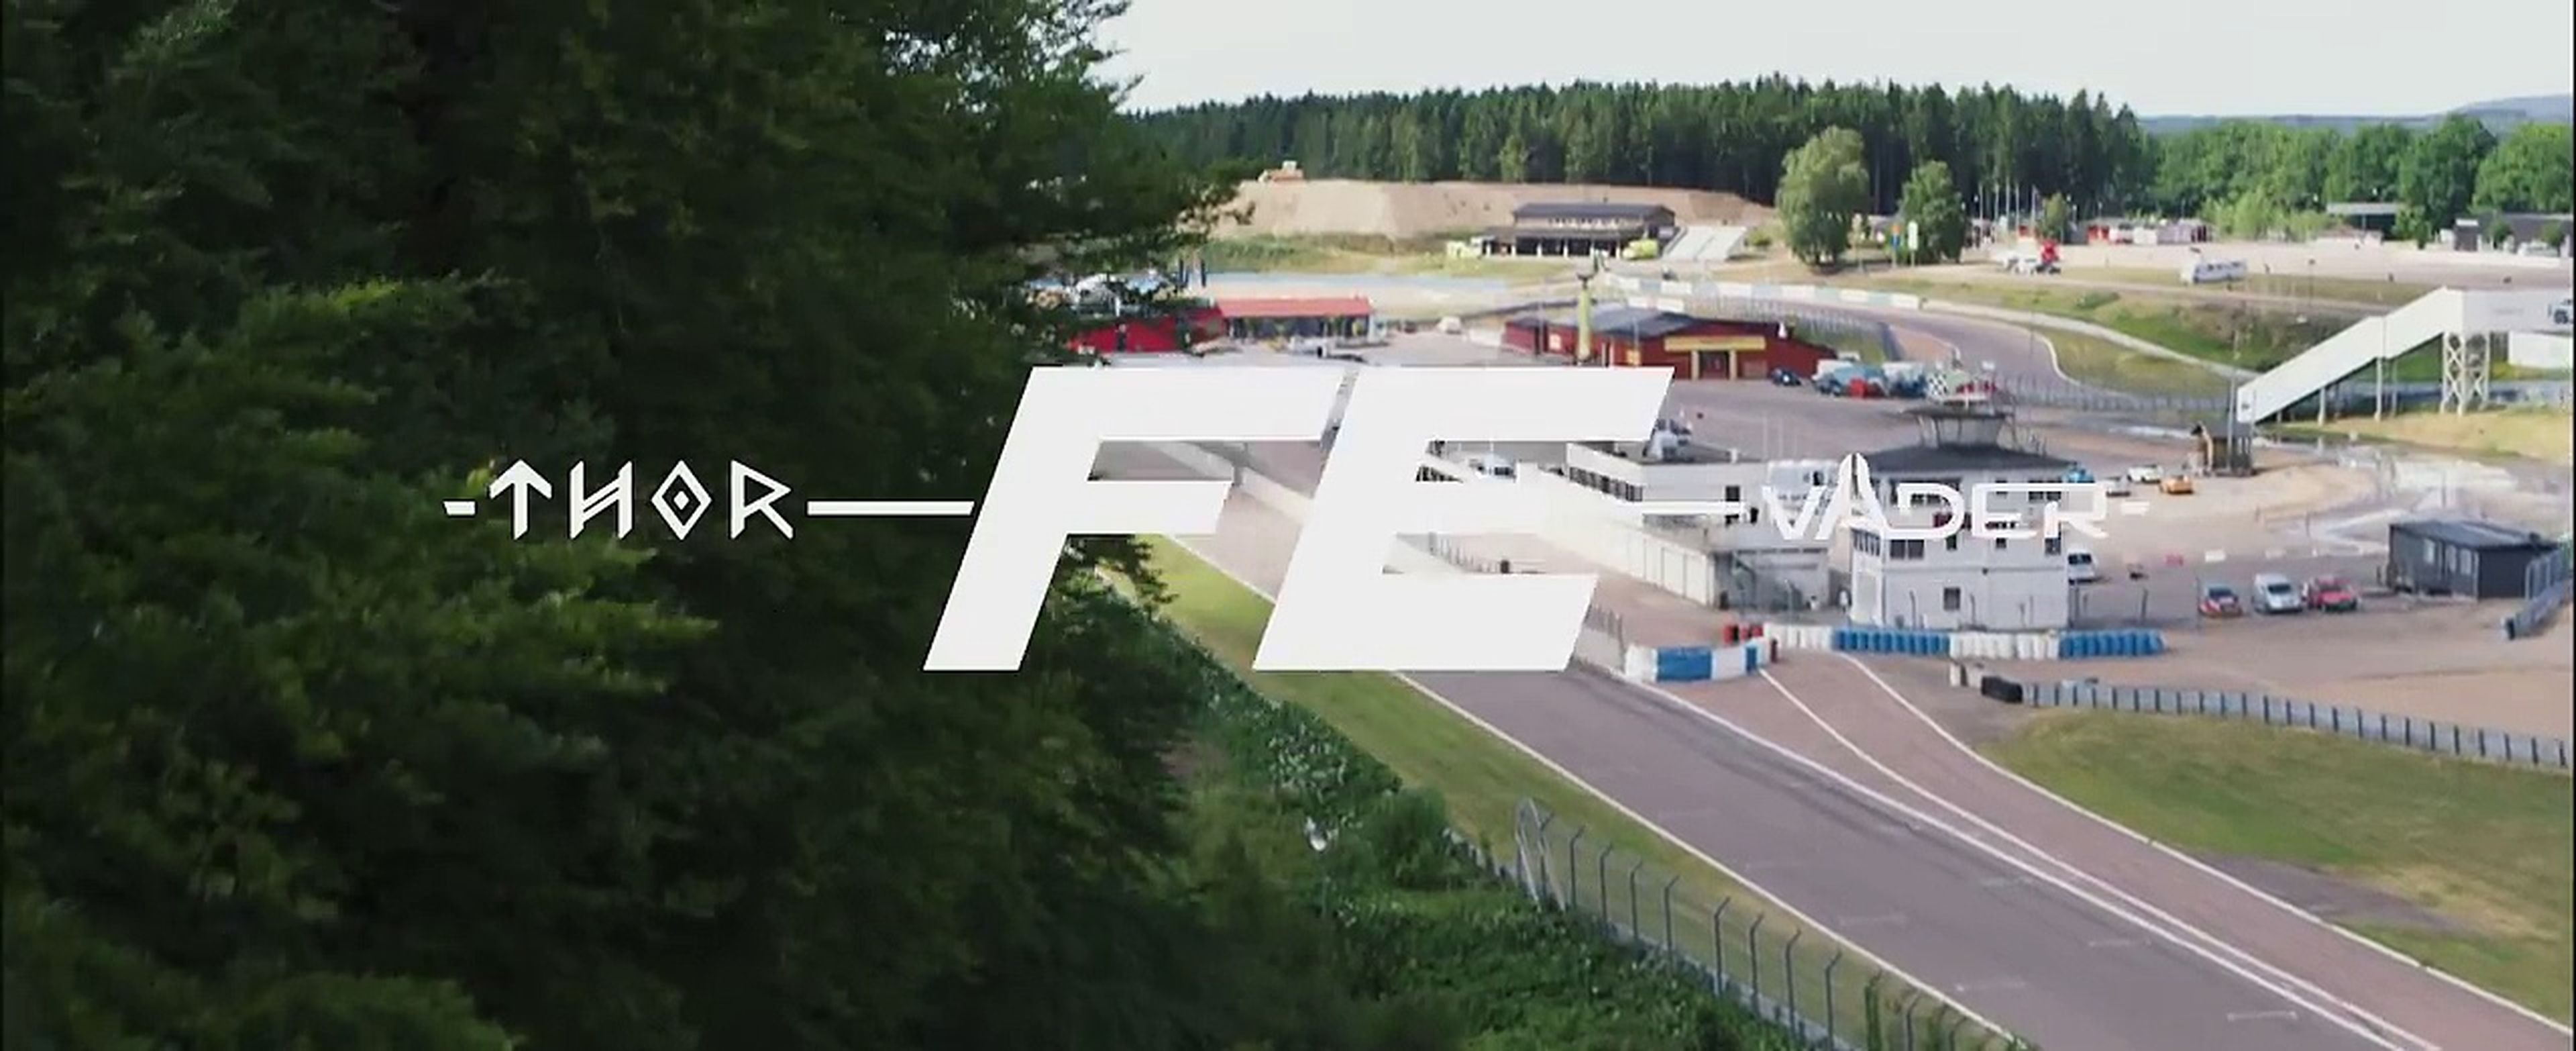 VÍDEO: Koenigsegg Thor y Väder, frente a frente